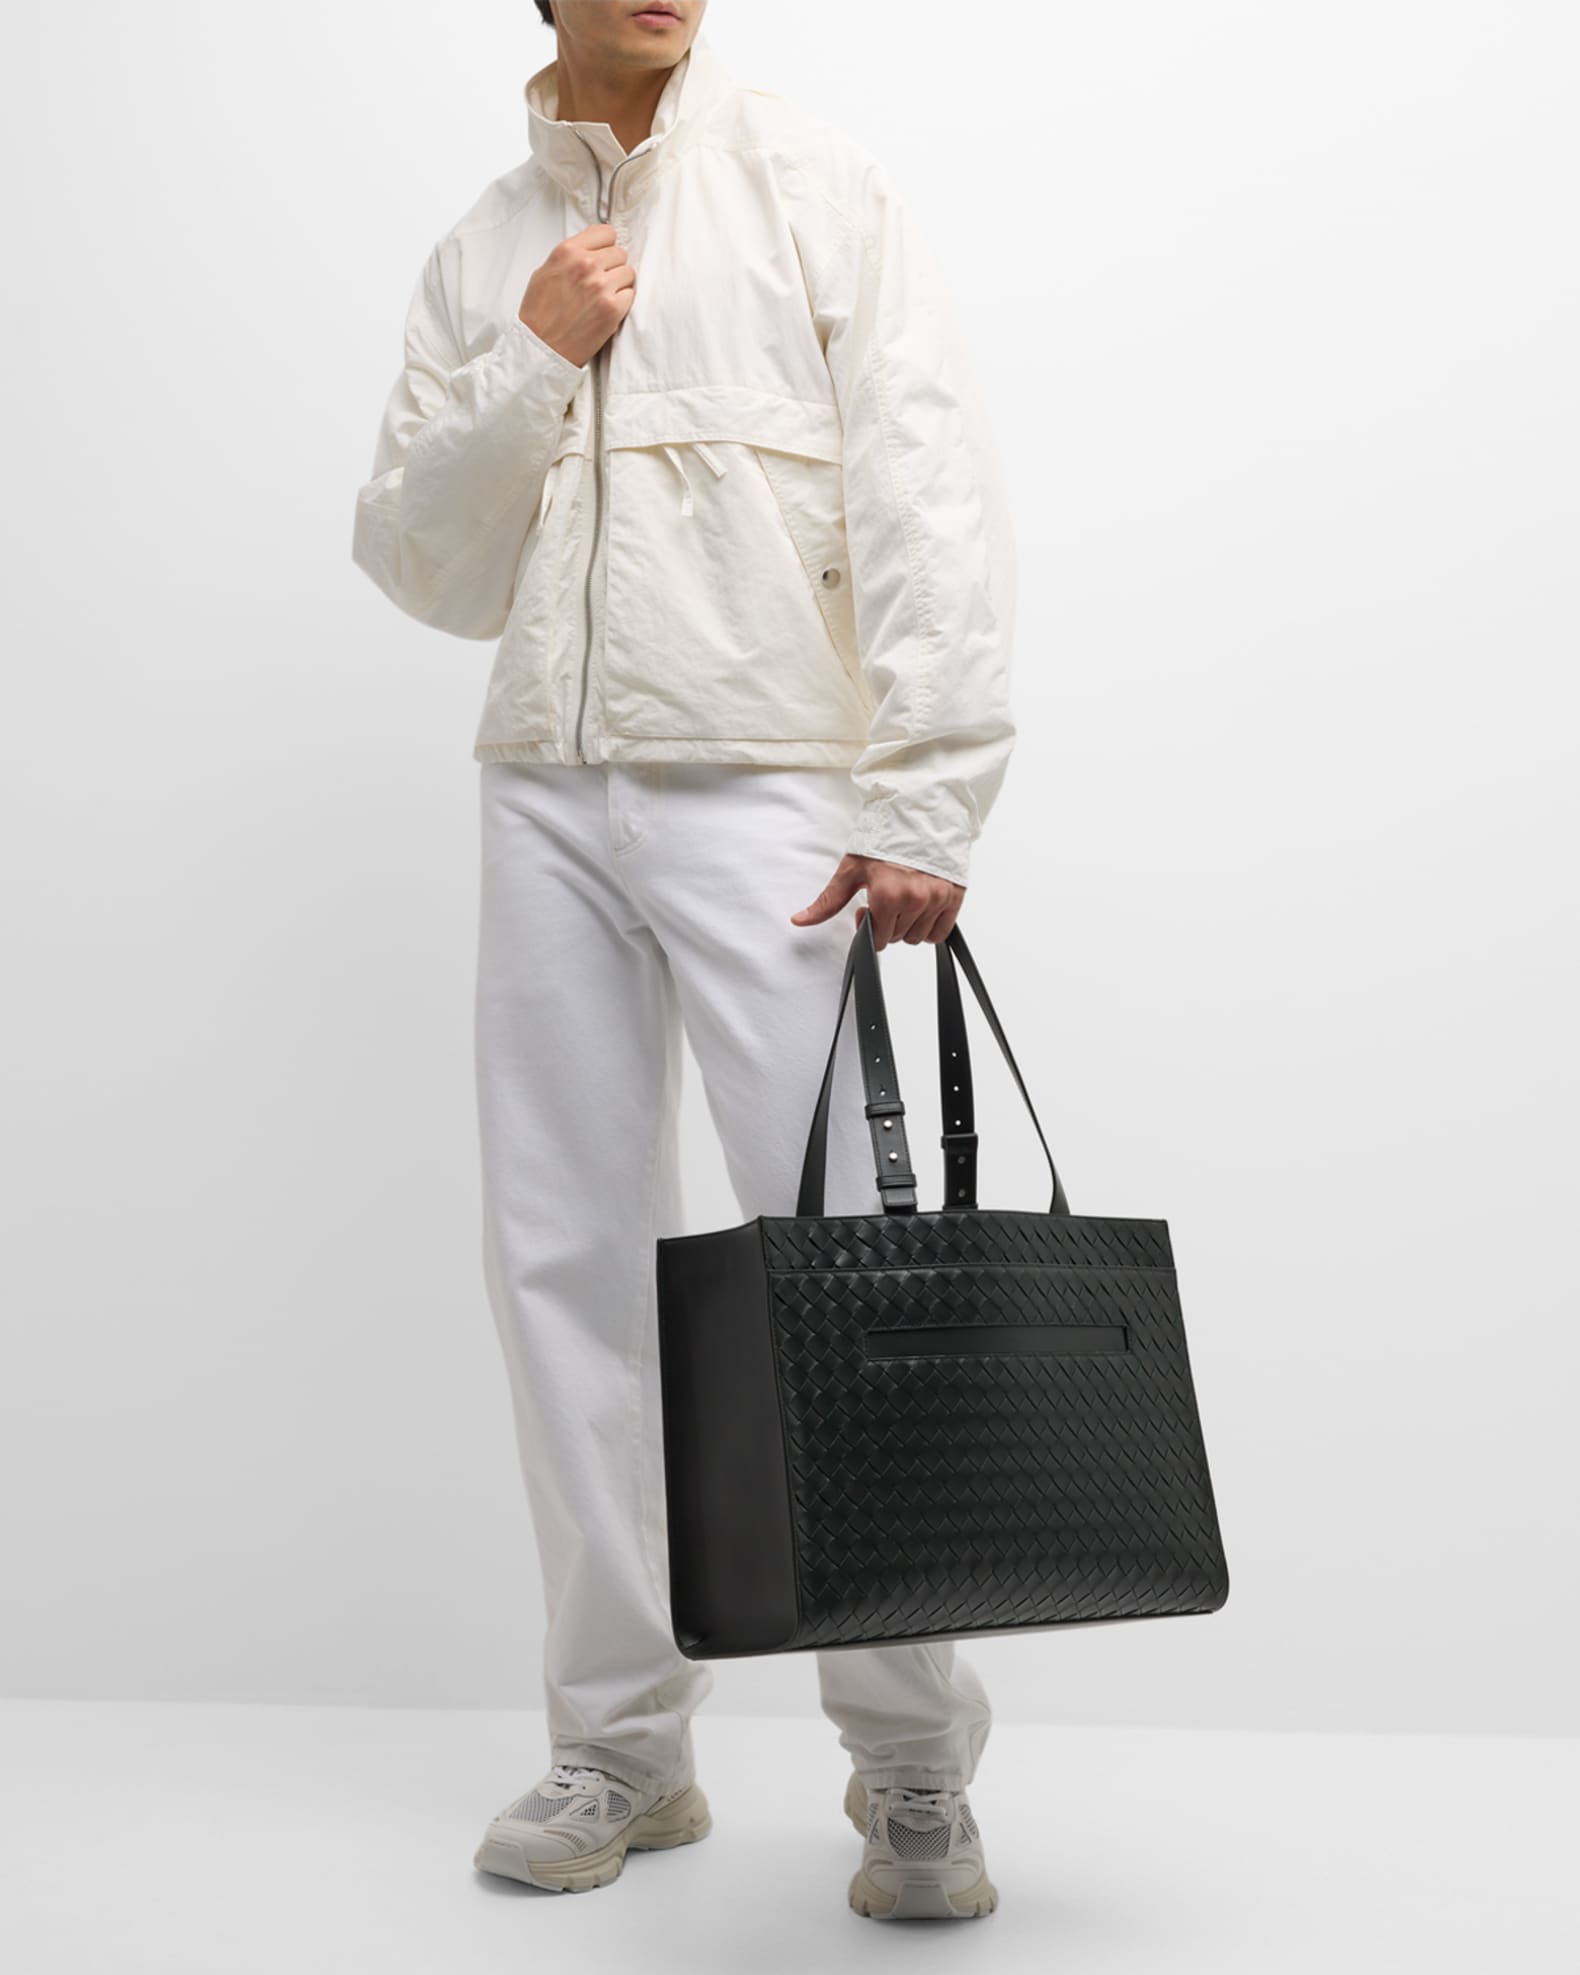 Bottega Veneta Men's Medium Classic Intrecciato Tote Bag